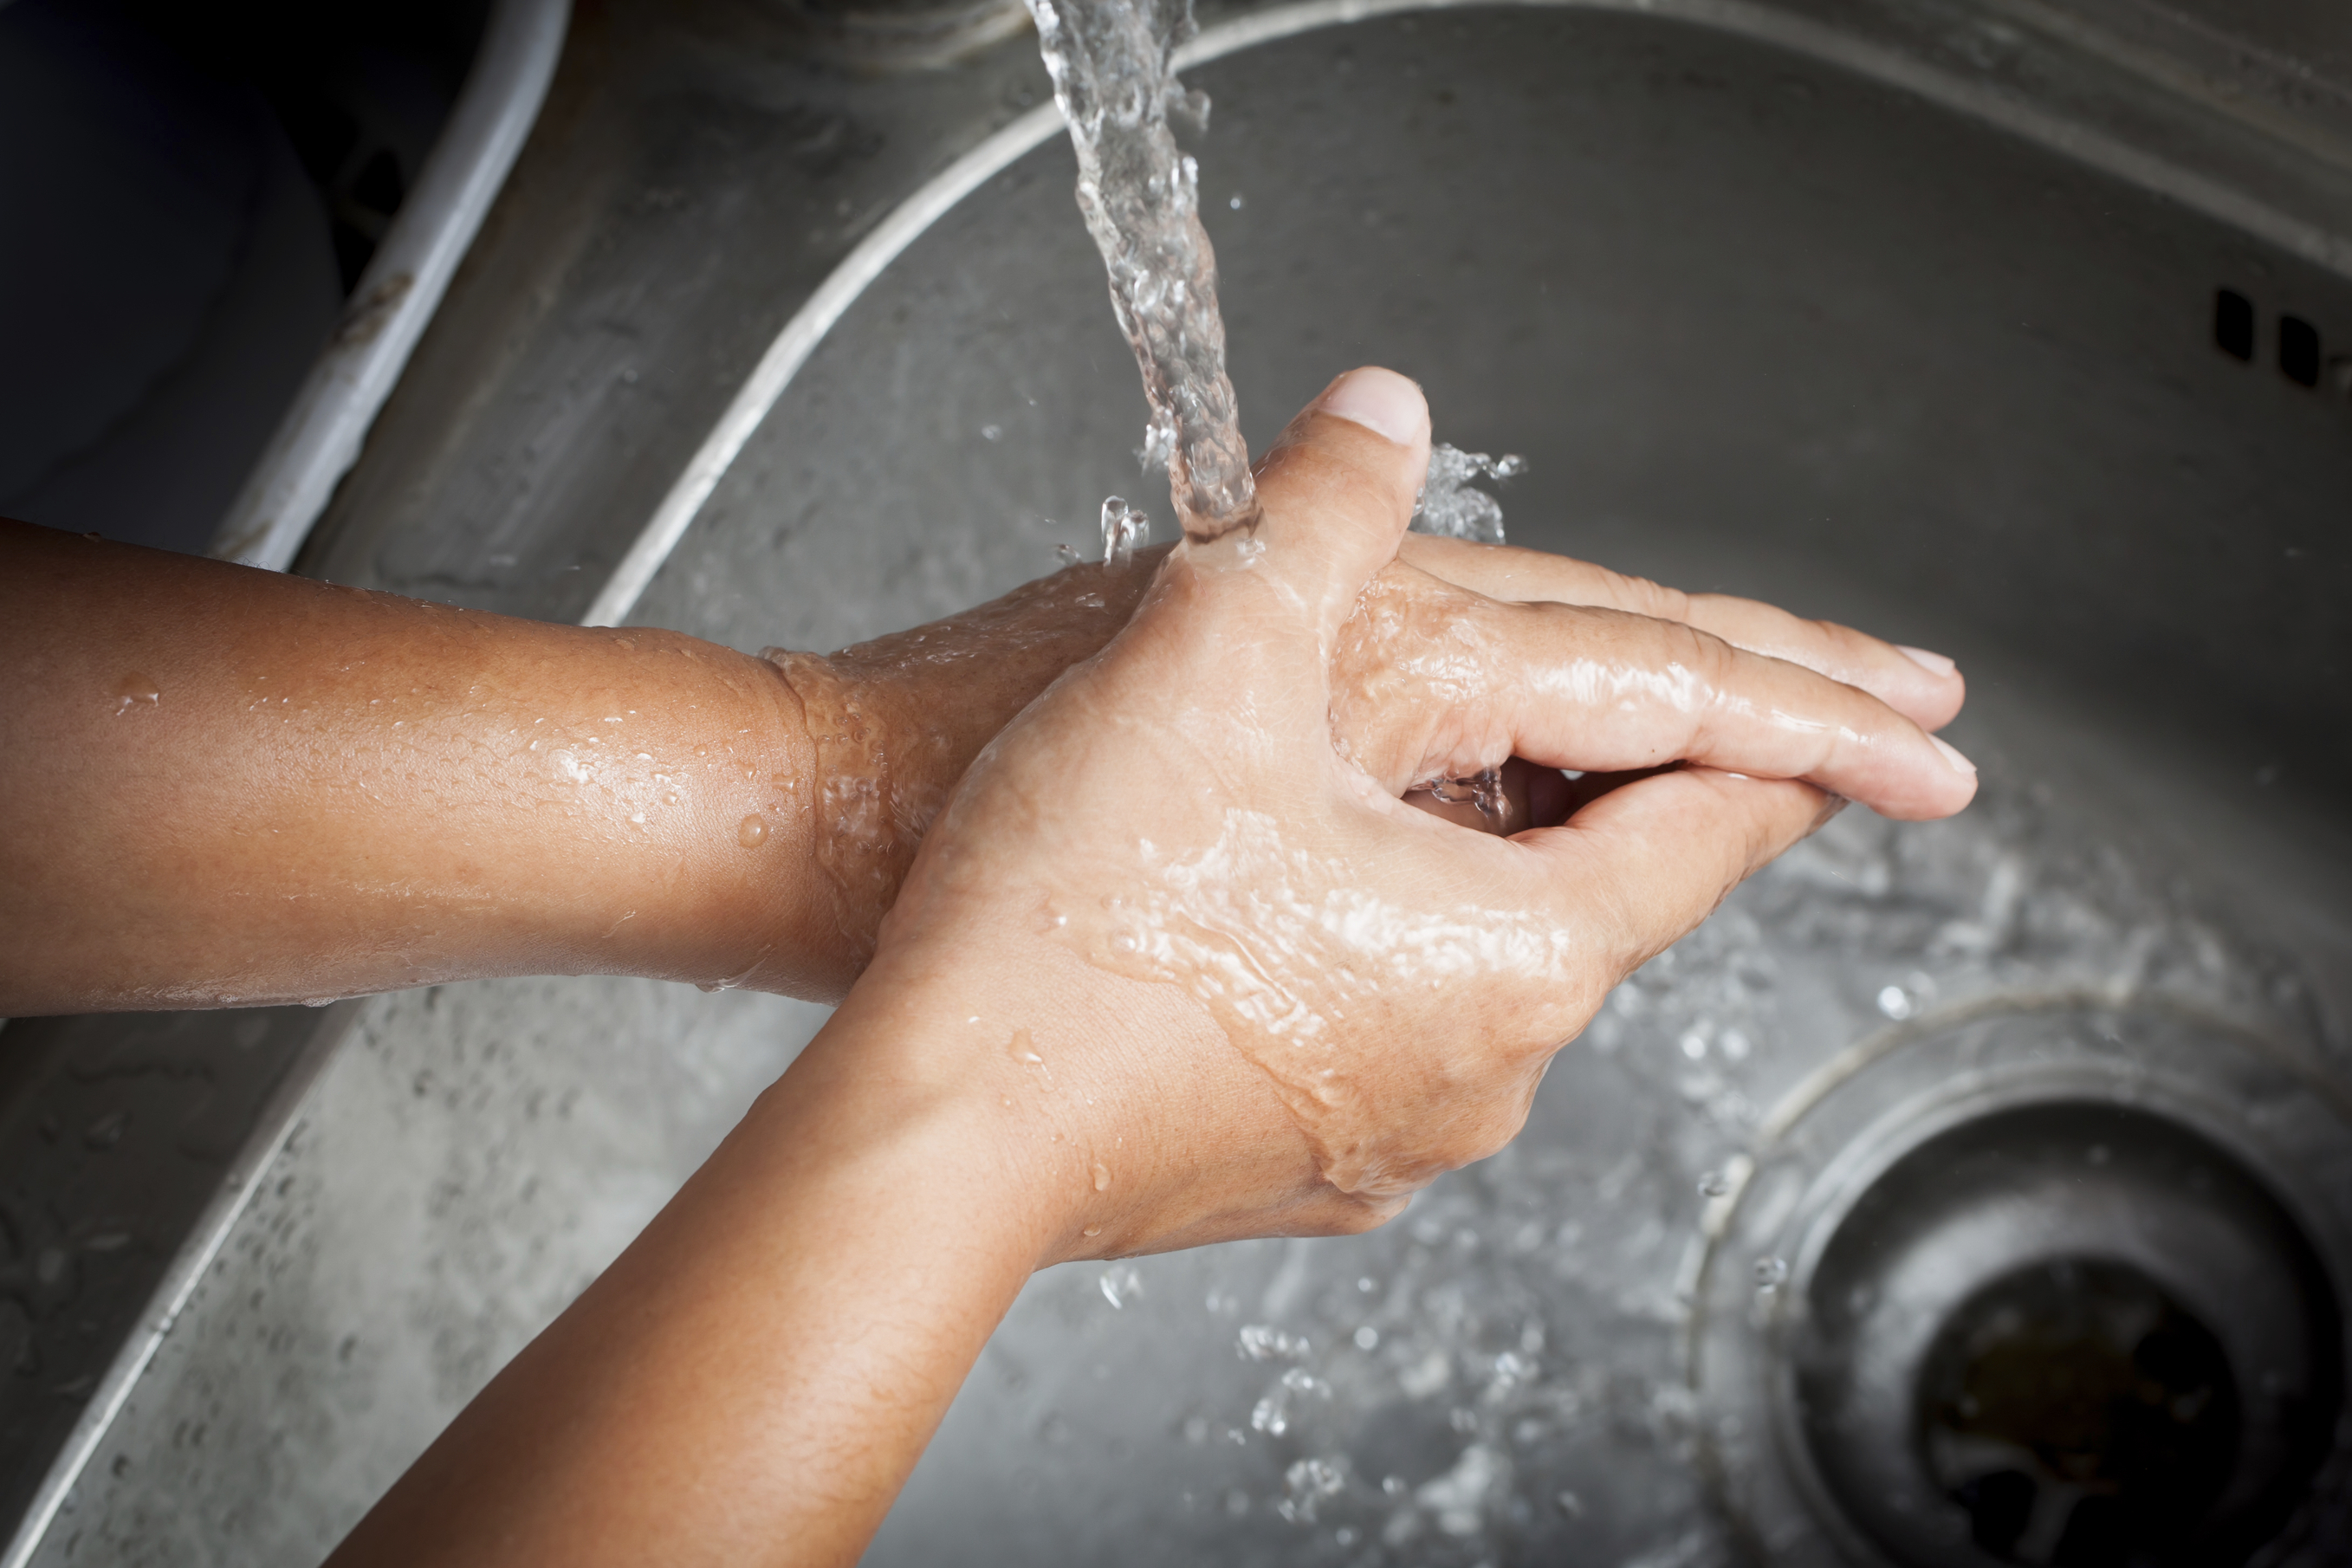 Woman washing her hands under running water